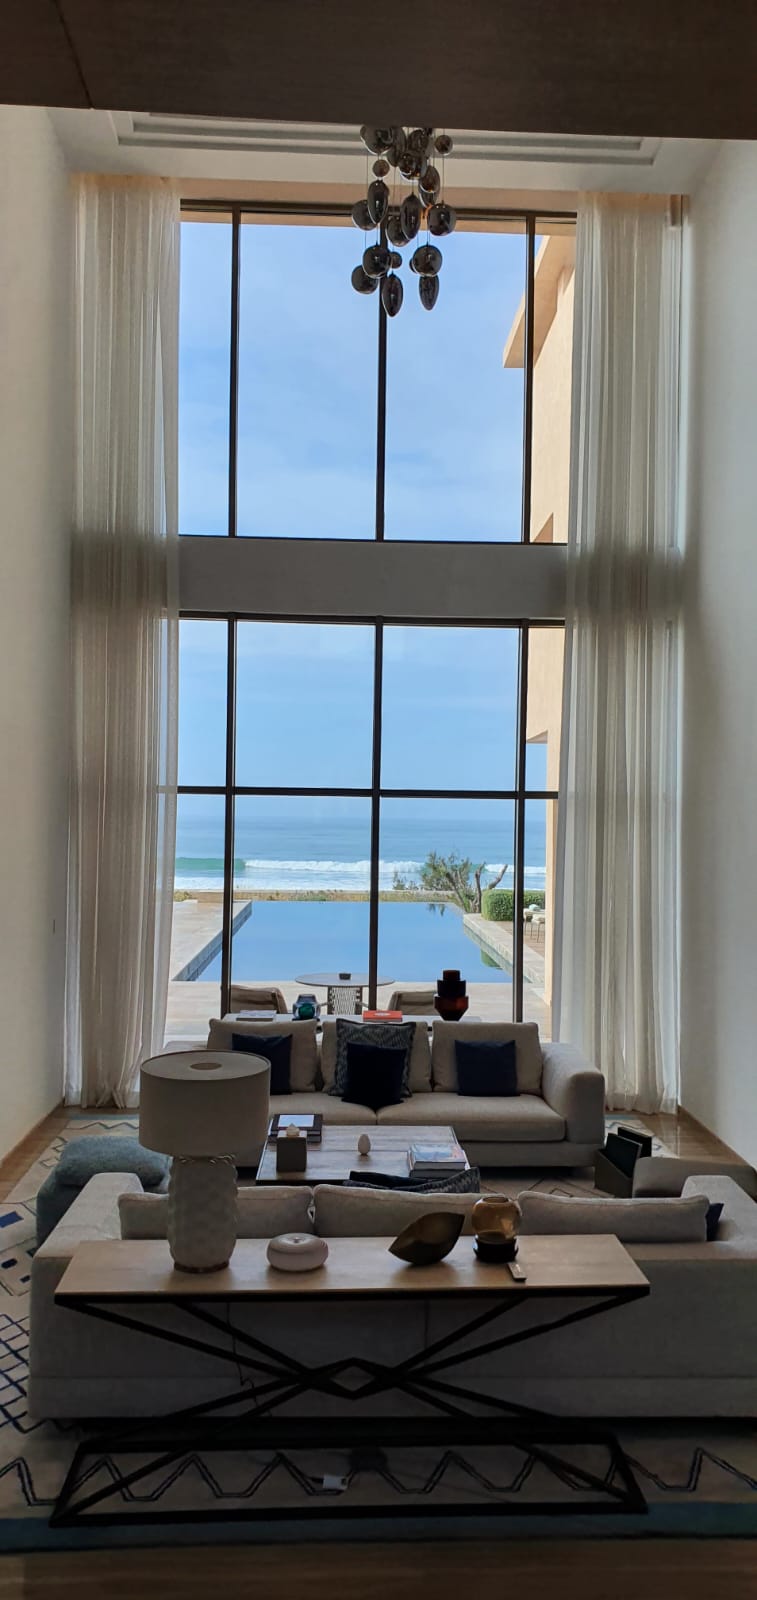 Ein luxuriöses Wohnzimmer mit Blick durch ein schwarz gerahmtes Sprossenfenster auf eine Terrasse mit Pool und dahinter das weite Meer